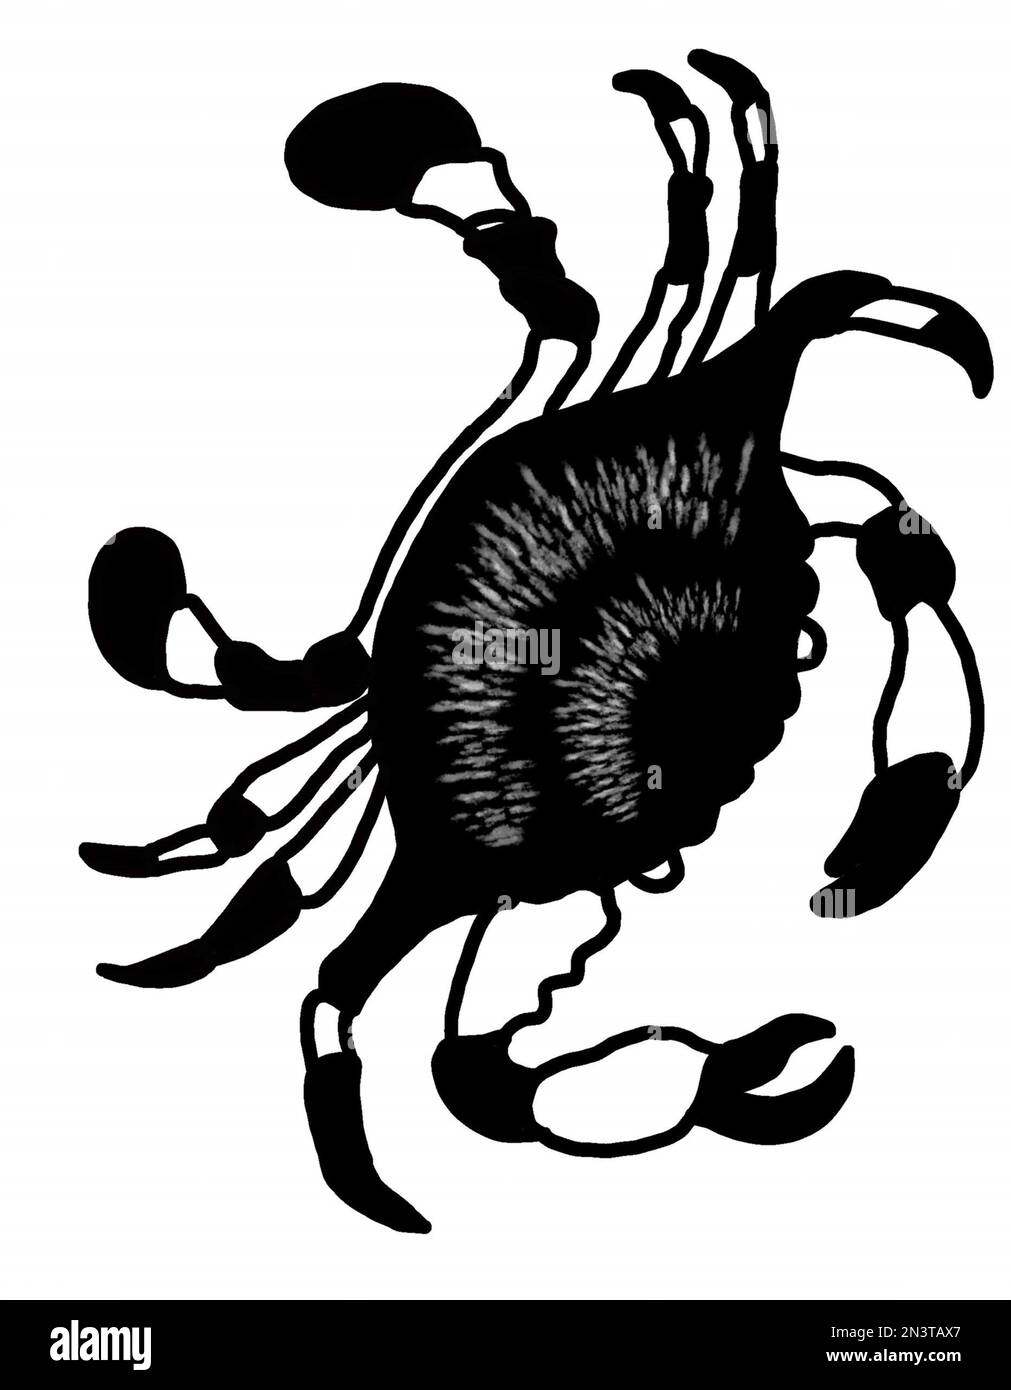 Seekrabben sitzen schwarz und grau mit weißen Sprenkelkrallen. JPEG-Darstellung der Unterwasserwelt für Stoffe, Textilien, Verpackungen, Geschenke, Karten, Bettwäsche. Stockfoto